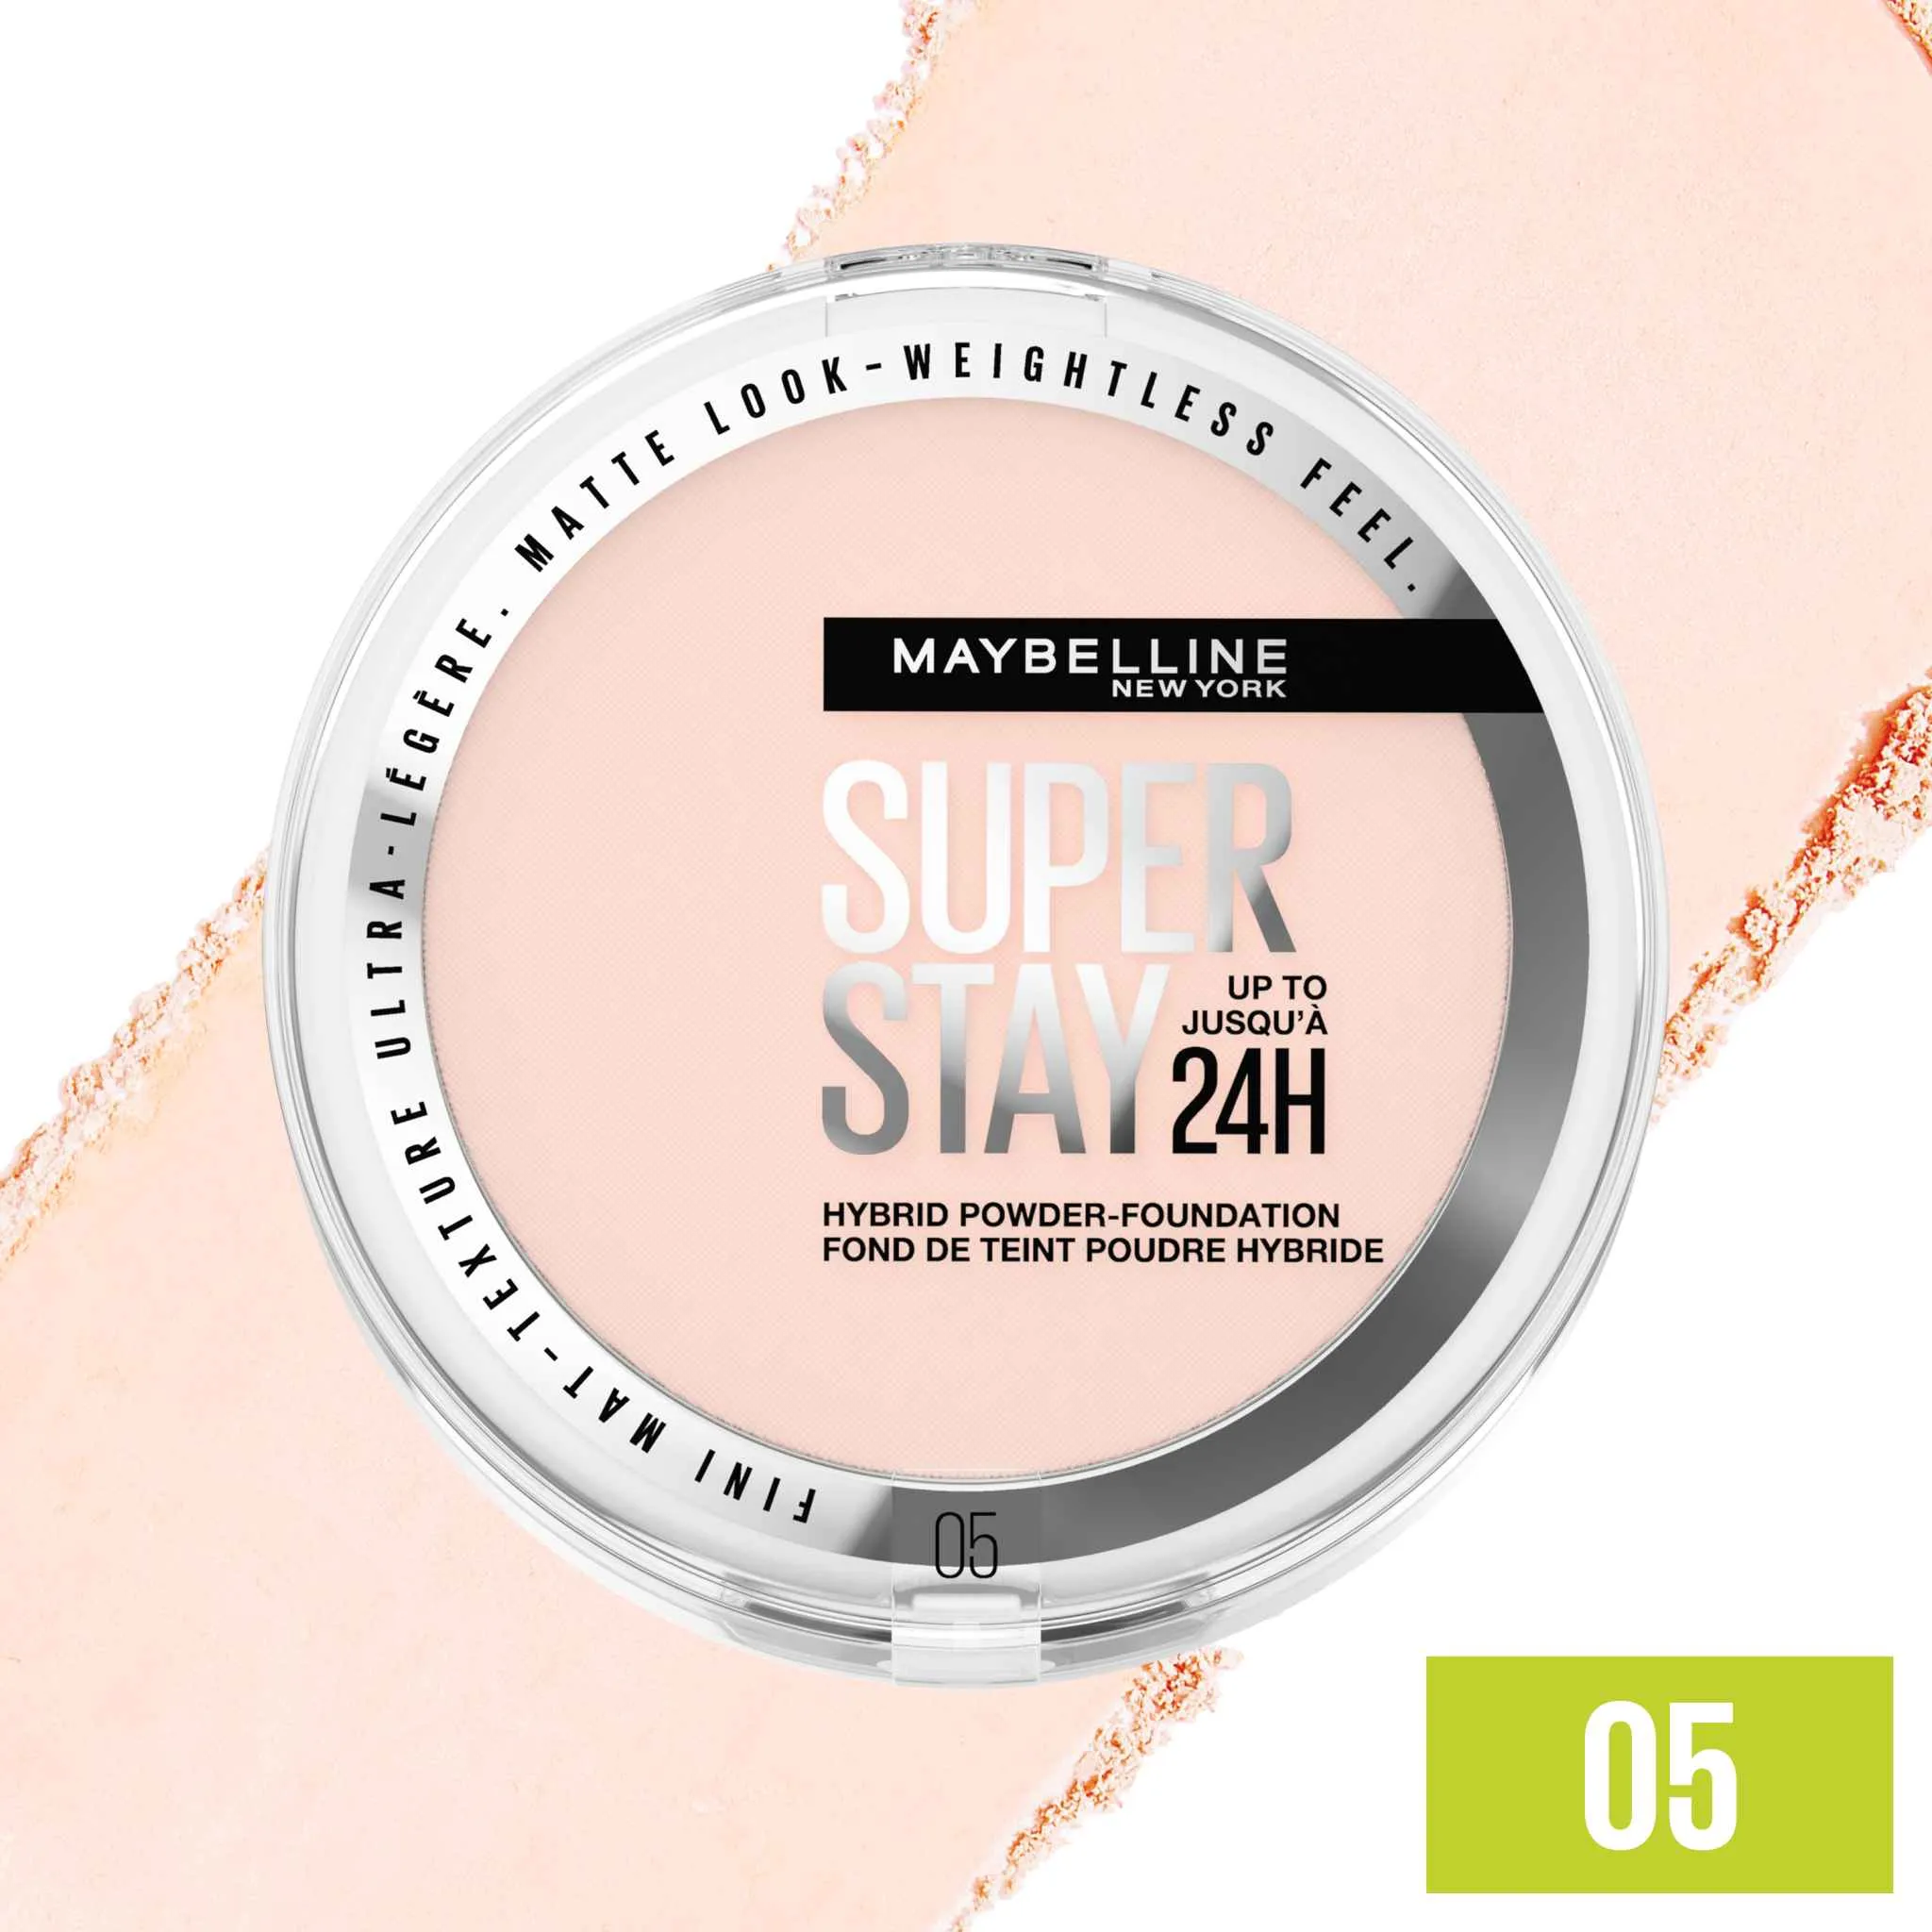 Maybelline New York SuperStay 24H Hybrid Powder-Foundation 05 make-up v púdri, 9 g 1×9 g, make-up v púdri